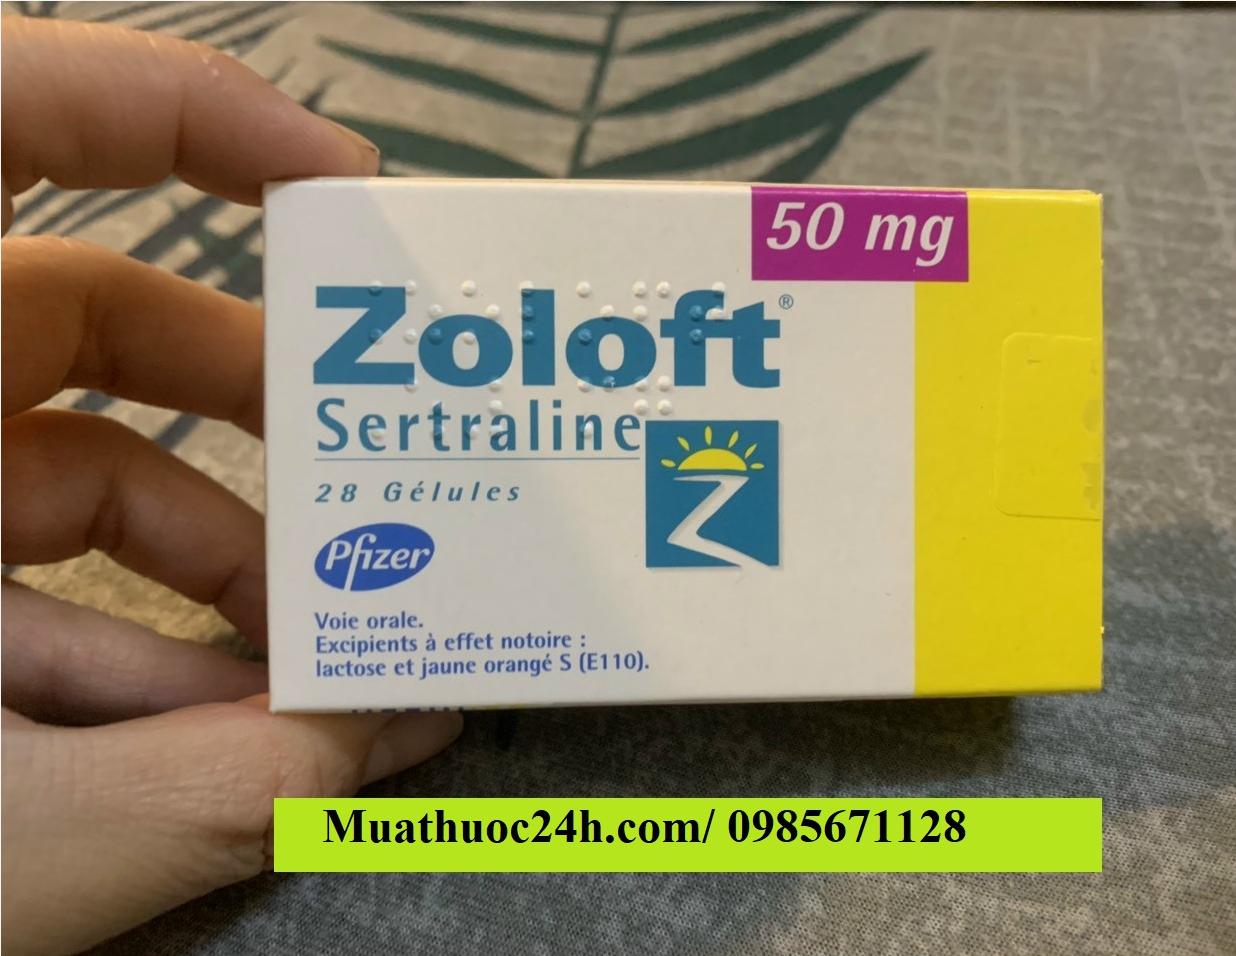 Thuốc Zoloft 50mg Sertraline giá bao nhiêu mua ở đâu